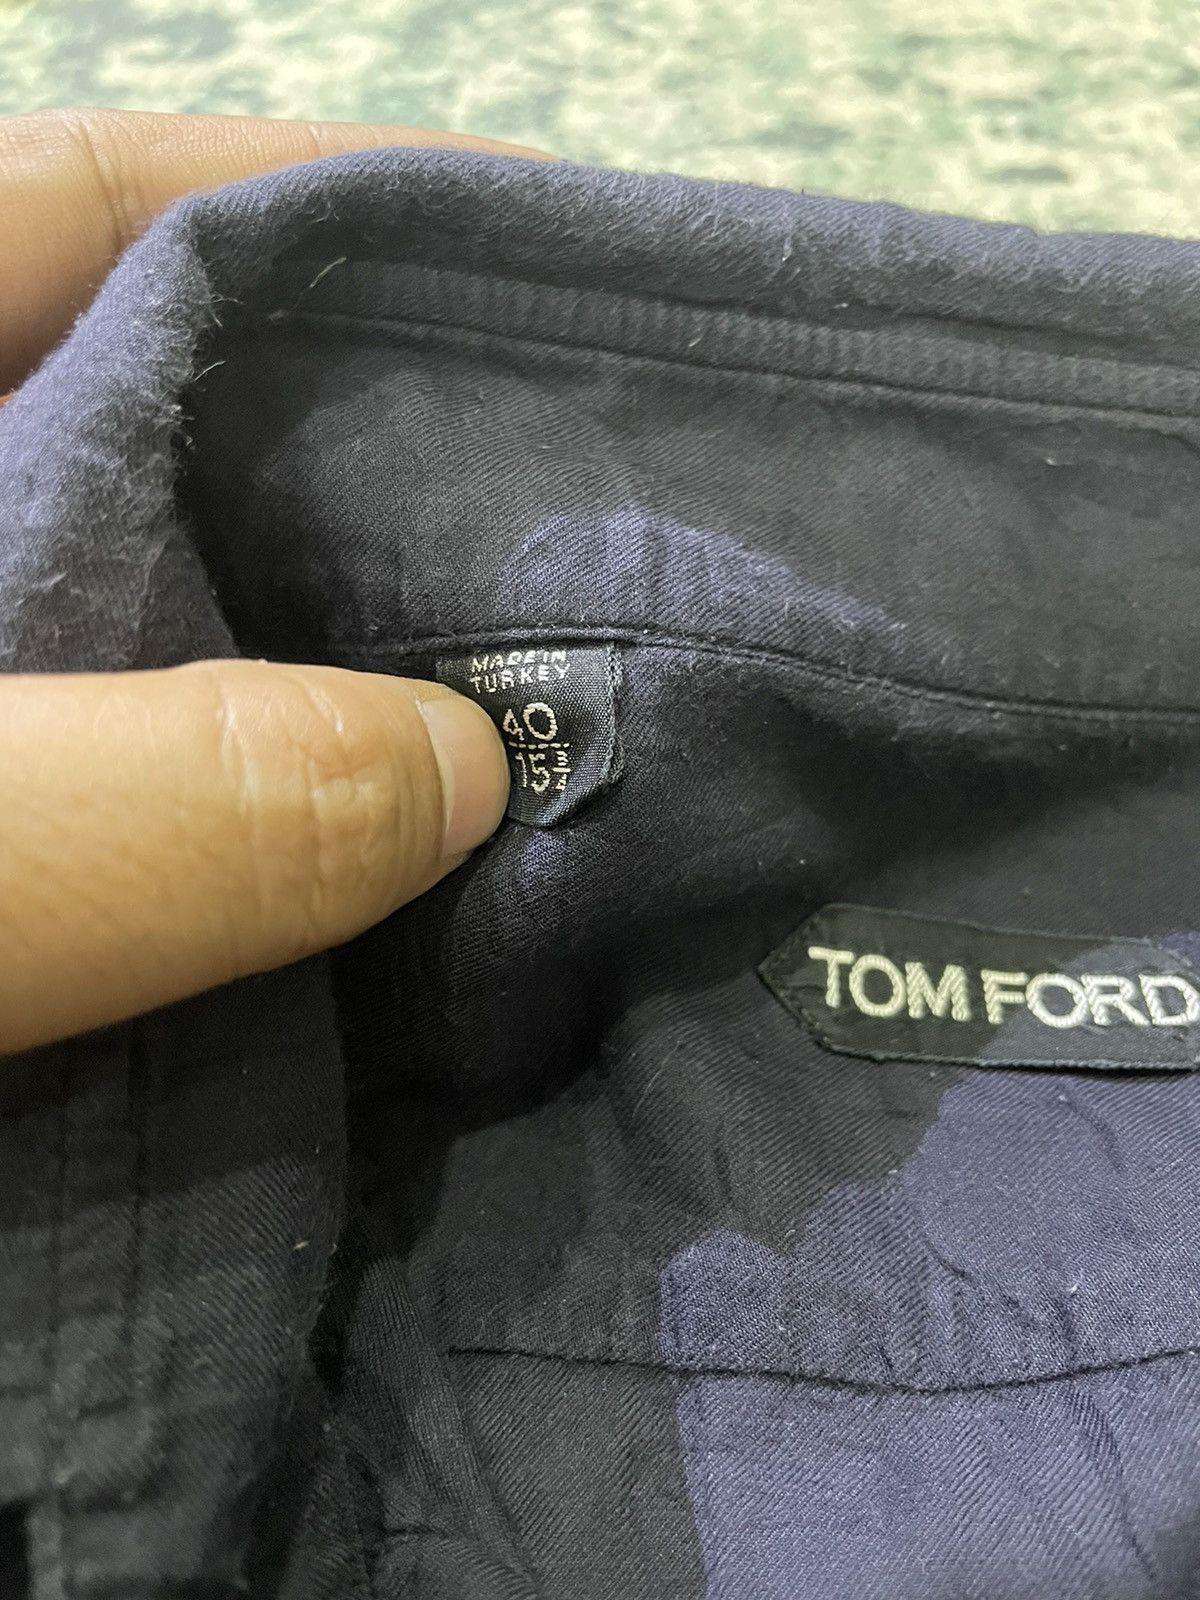 Tom Ford Cashmere & Cotton Shirt - 6